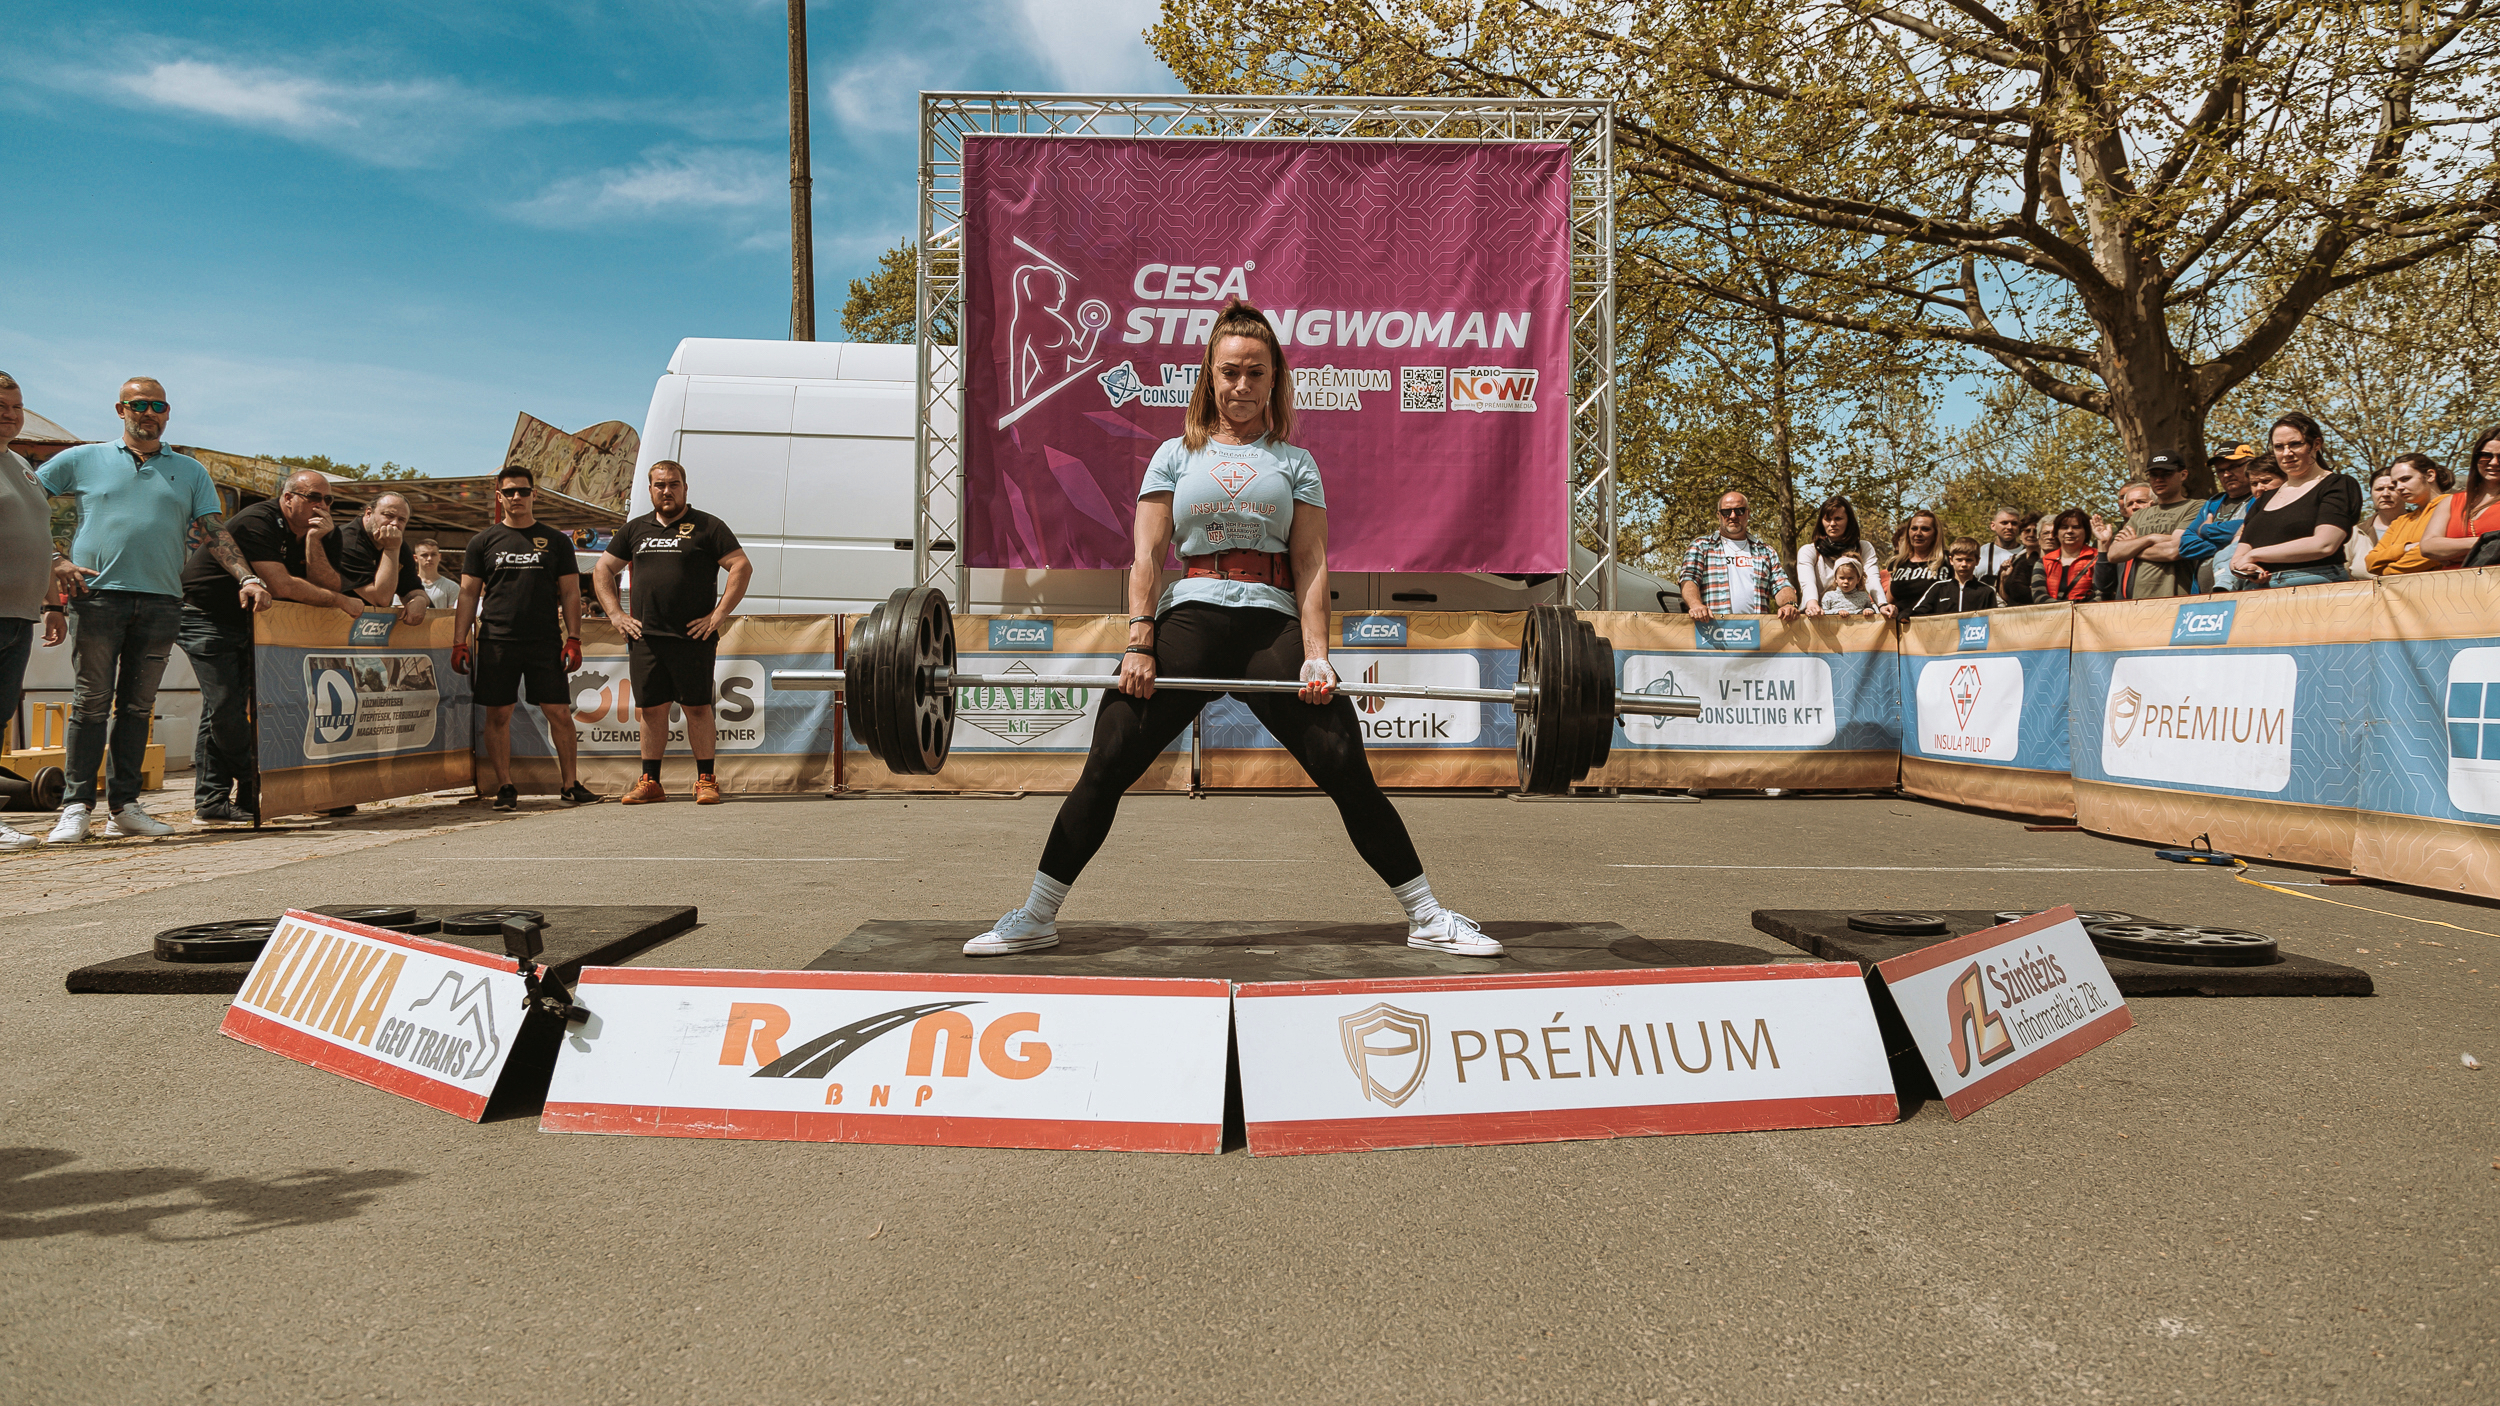 A Közép-Európai Erősember Szövetség strongwoman liga első fordulójában Bordás Dorináé lett az első hely. Fotó: Prémium Média & Sport Management Zrt.